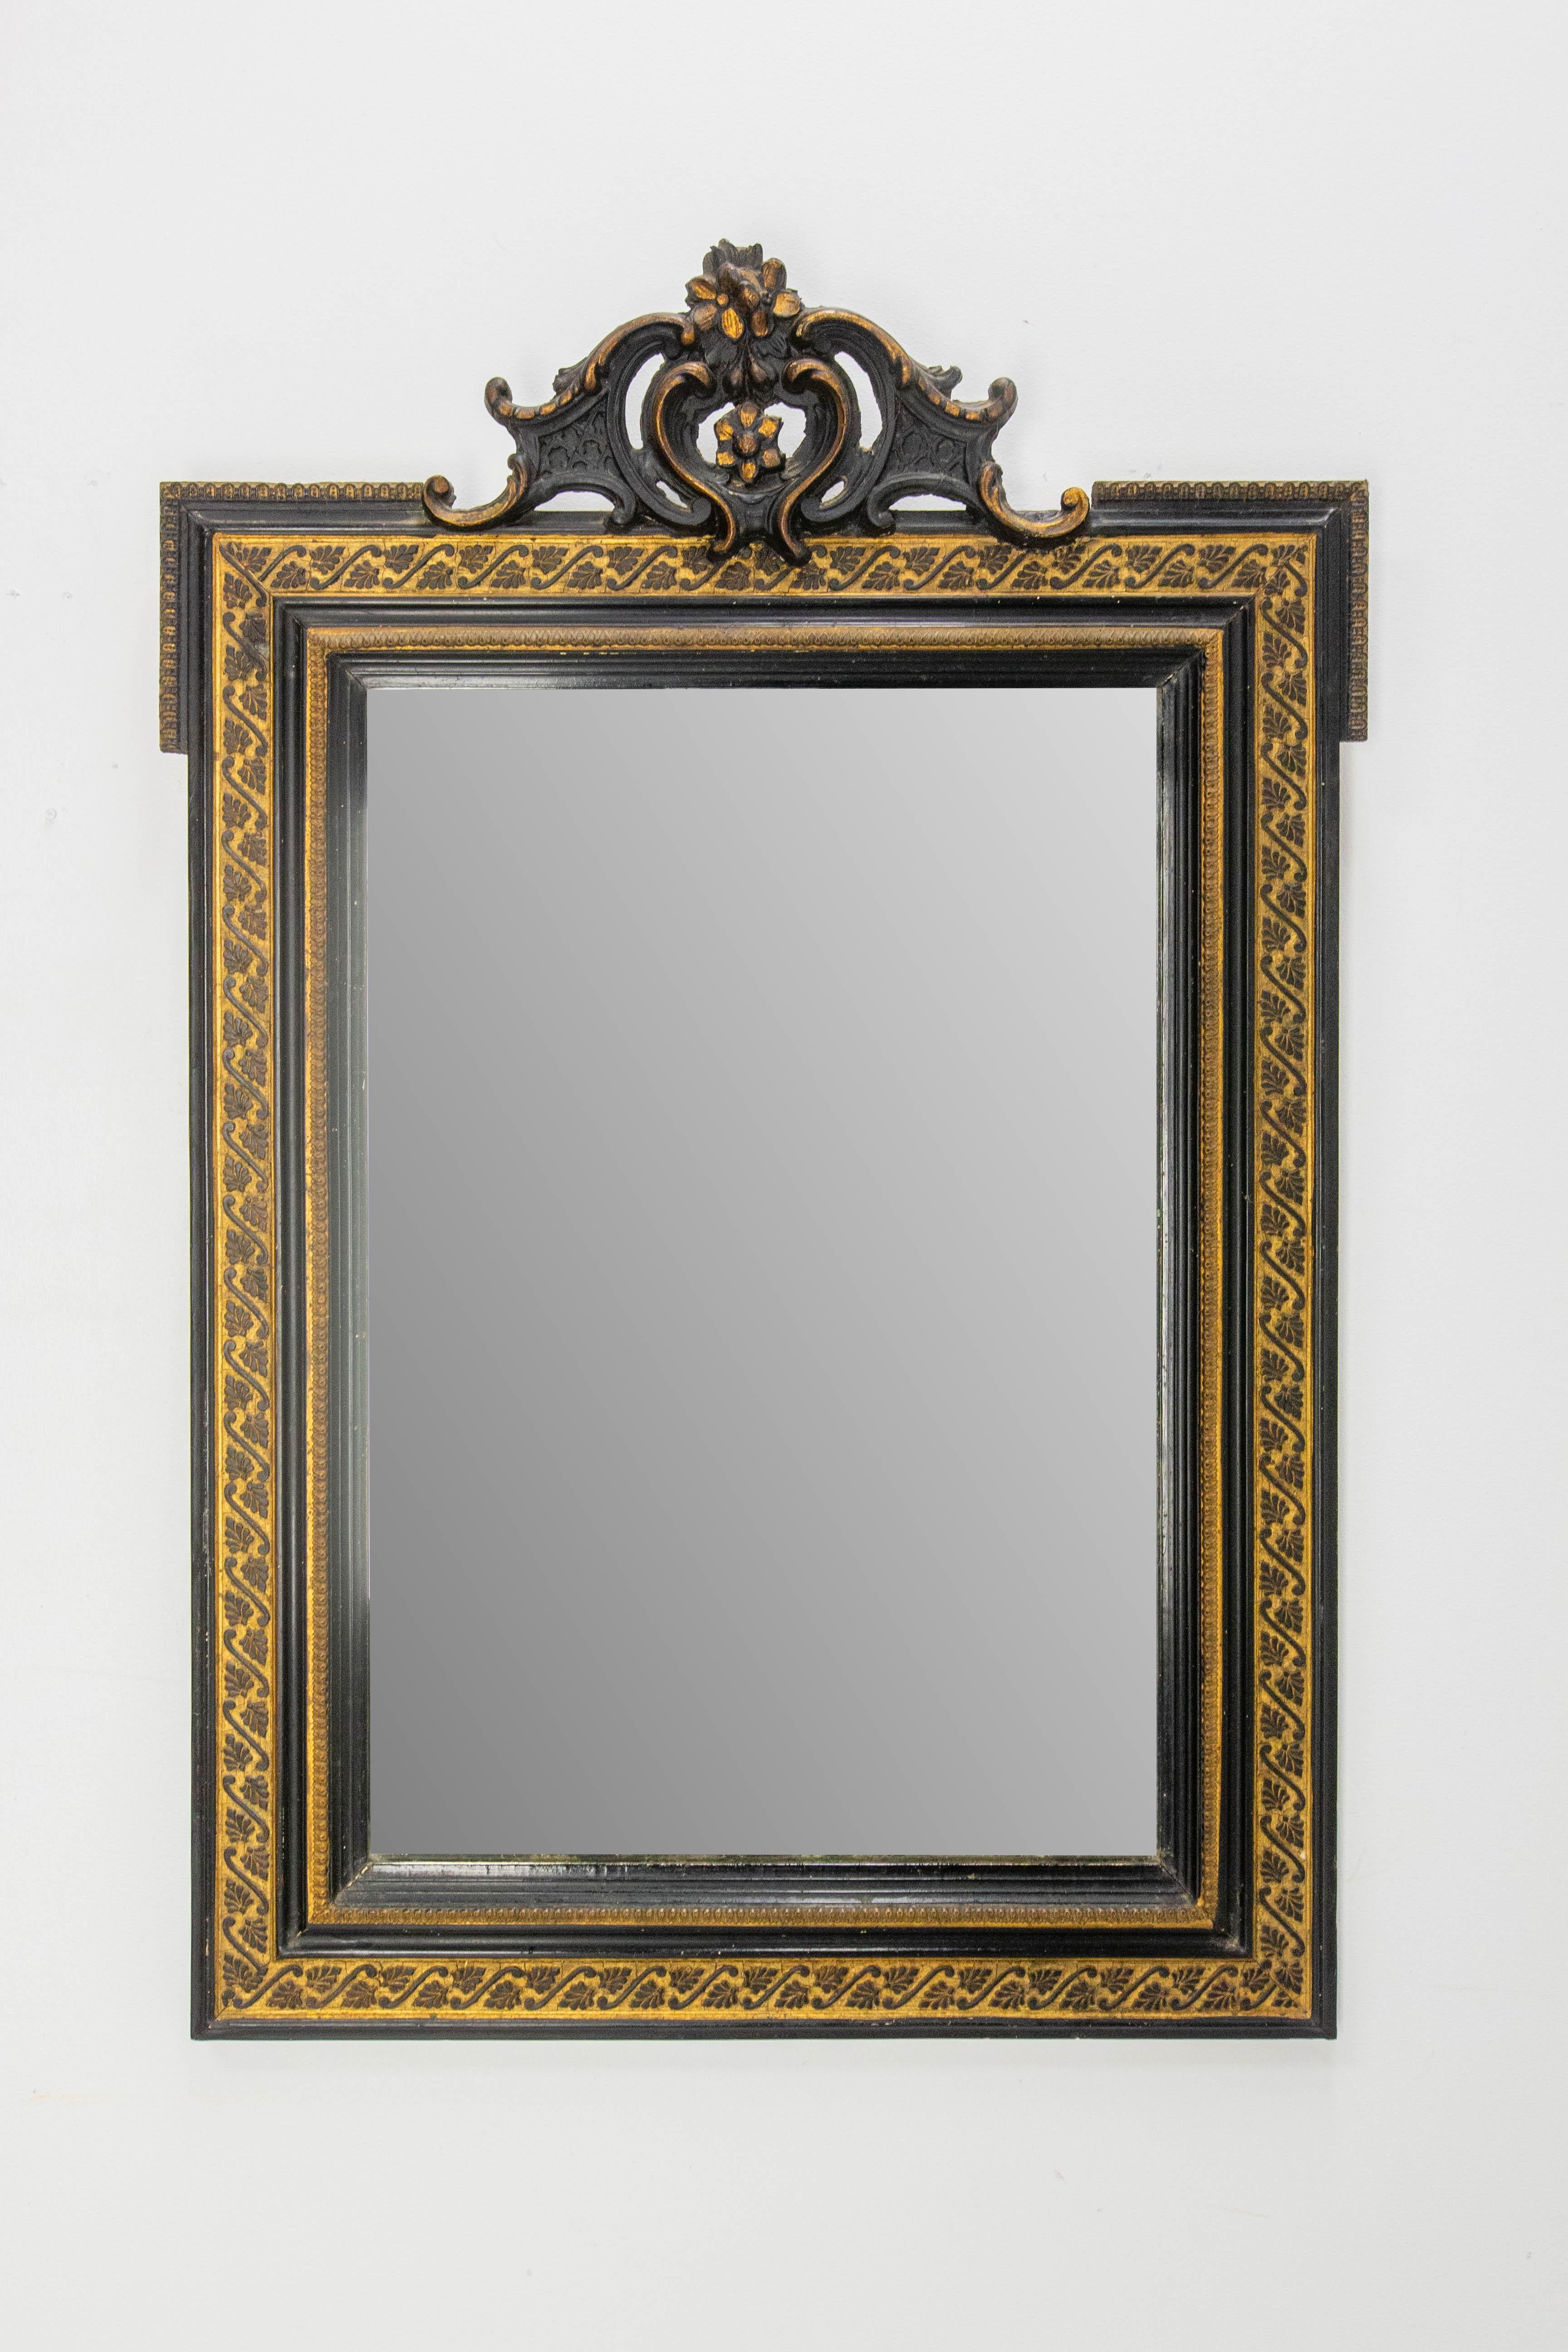 Miroir mural Napoléon III en bois et stuc peint en noir et or.
Le mobilier noir et or est typique de la période Napoléon III.
Le miroir est l'original, avec des marques du temps qui font partie de l'intérêt du miroir.
Bon état ancien avec